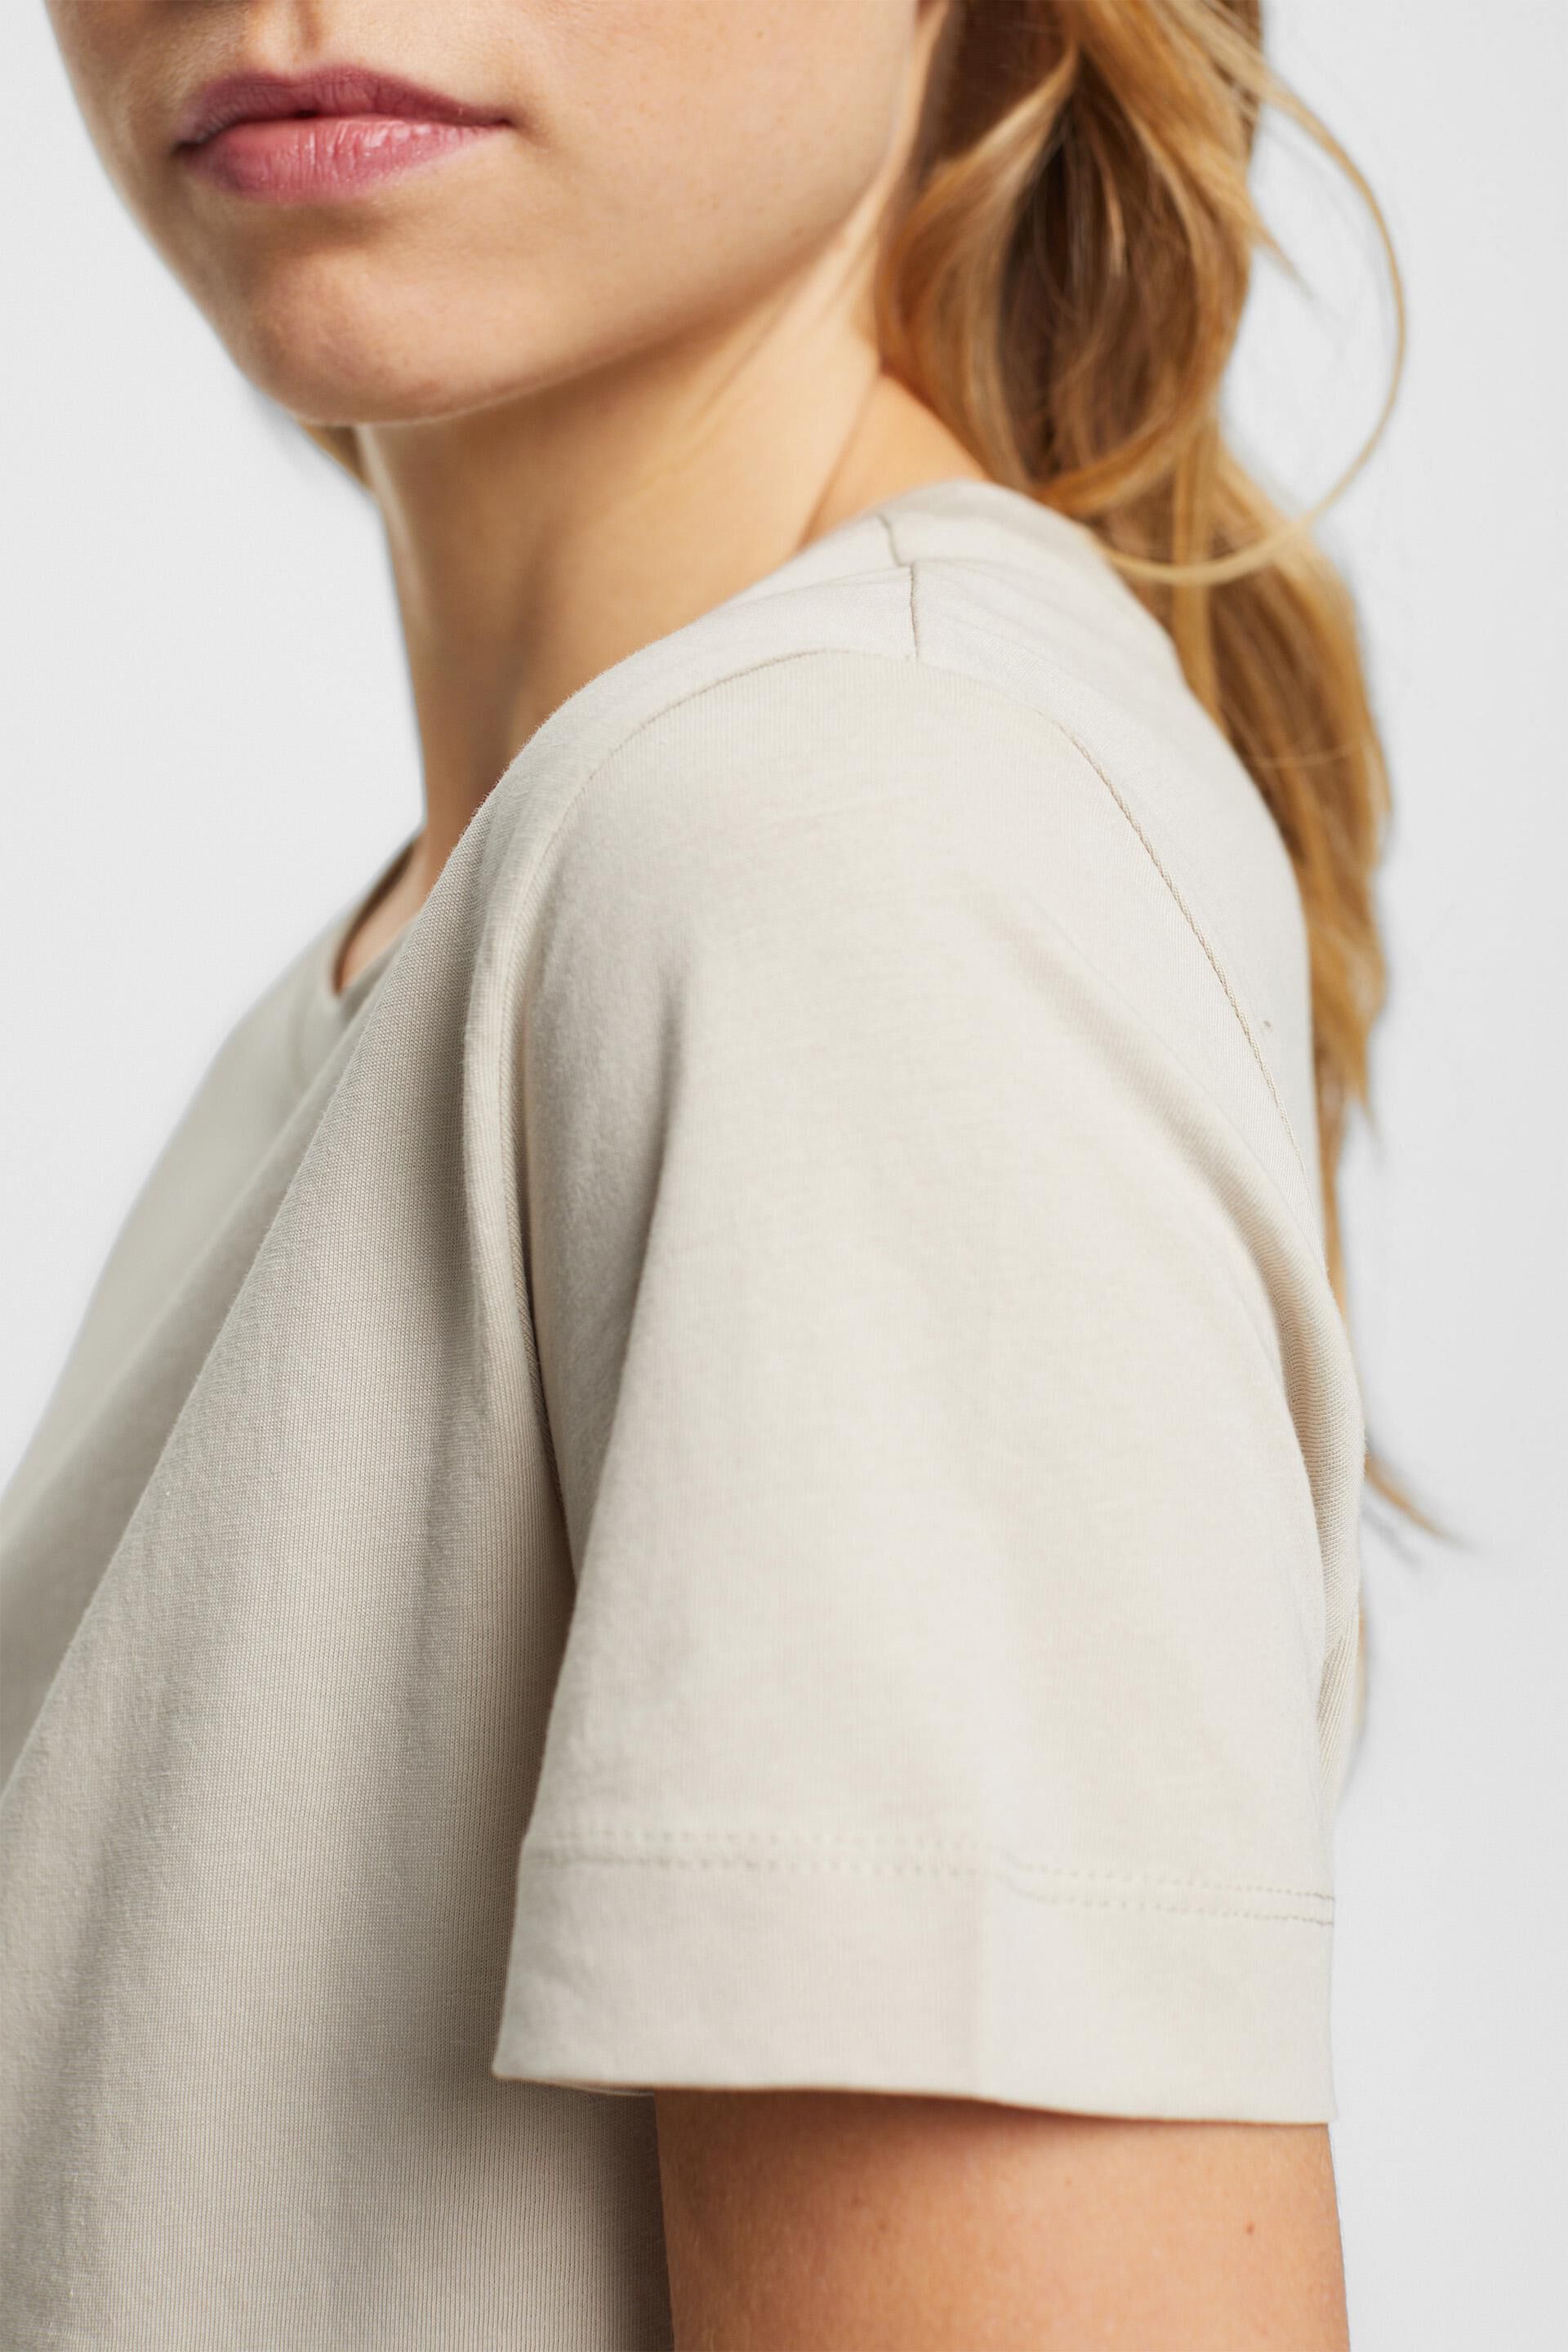 Esprit aus mit Rundhalsausschnitt T-Shirt Baumwolle